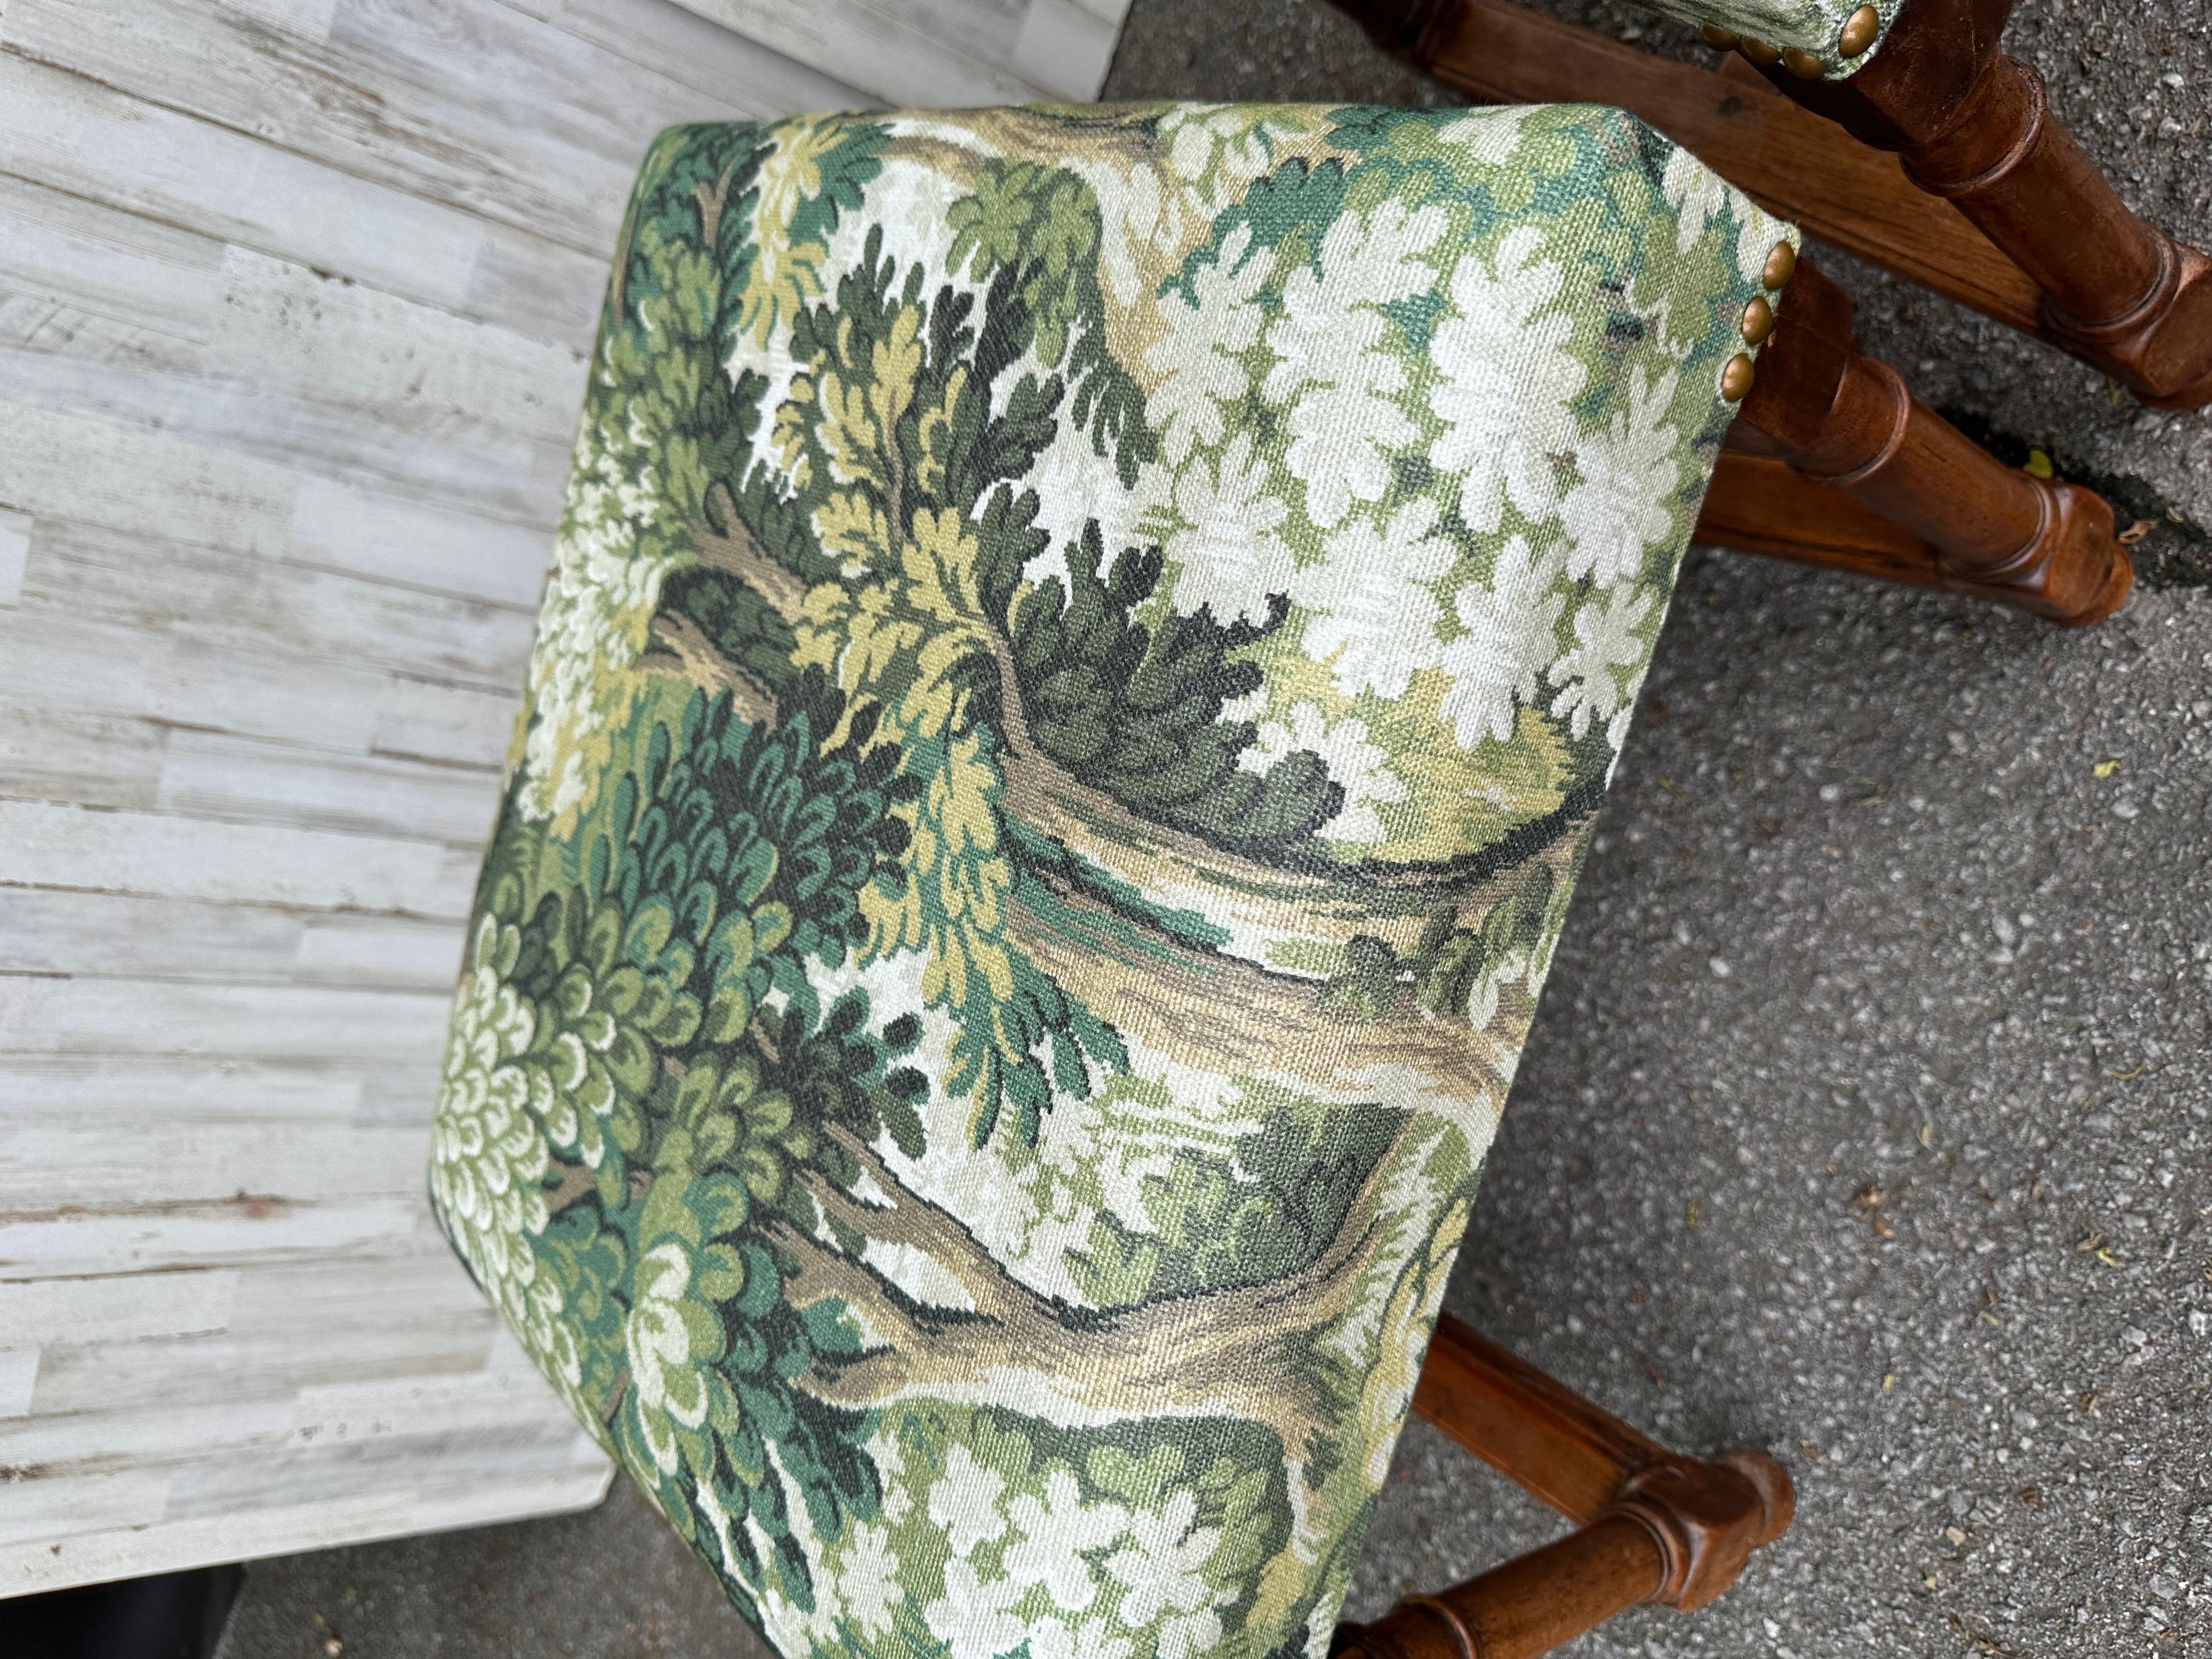 Il s'agit d'une magnifique paire de bancs nouvellement tapissés. Le tissu est une magnifique scène de forêt verte multicolore. La base est en bois massif sculpté à la main, d'une riche couleur brune qui s'associe merveilleusement au tissu vert et